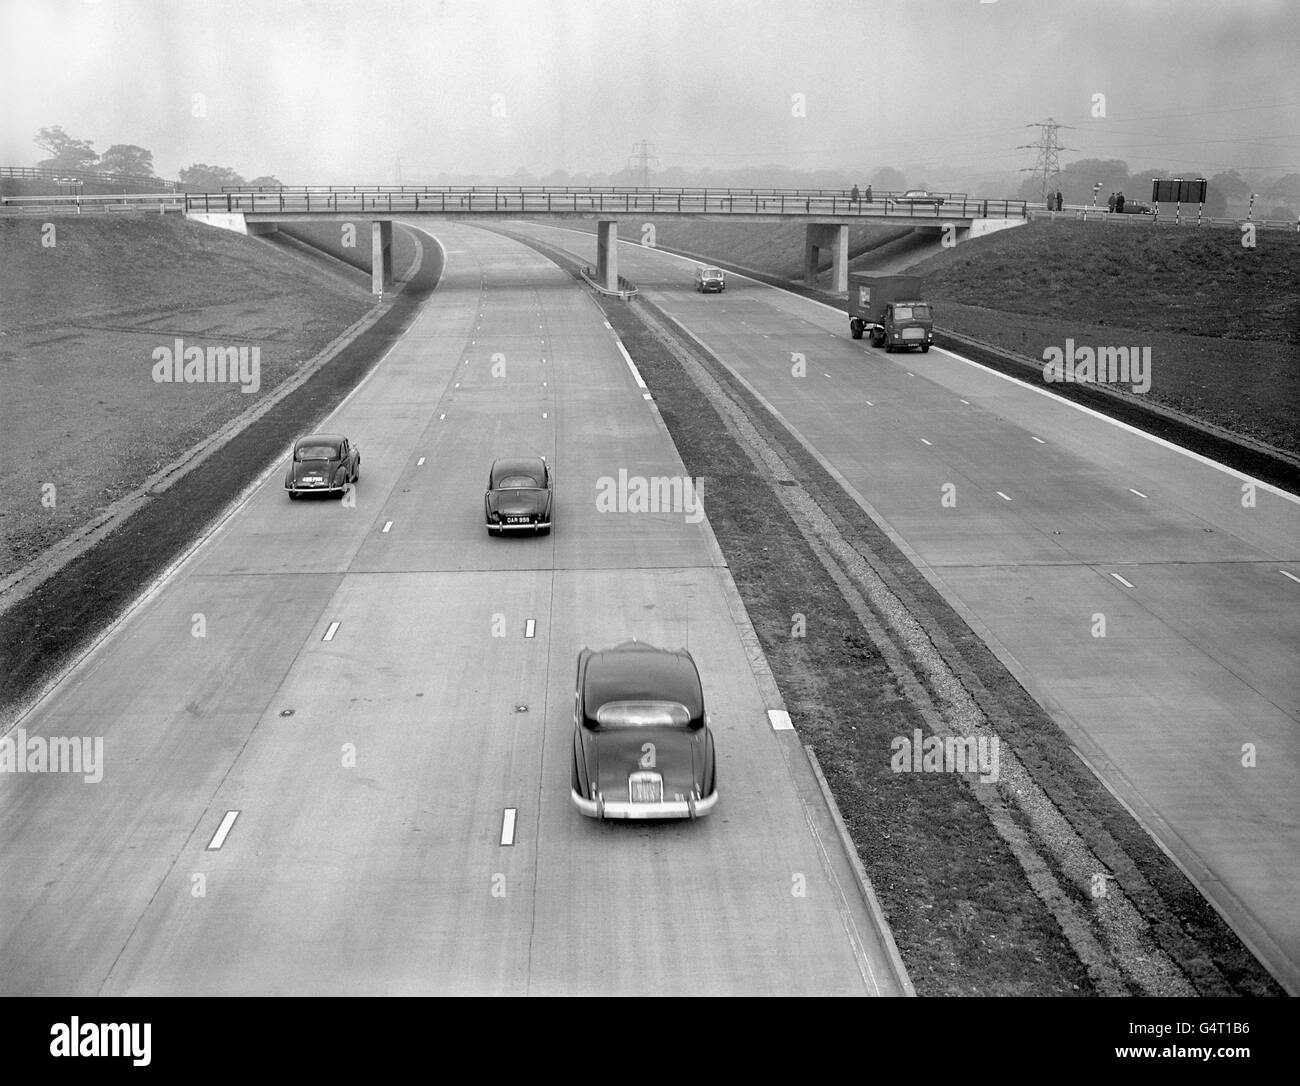 Die erste Fernstraße Großbritanniens, die Autobahn London-Birmingham M1, wurde nach der Eröffnung durch den Verkehrsminister eröffnet. Dieses Bild wurde in der Nähe des Luton Sporns aufgenommen. Stockfoto